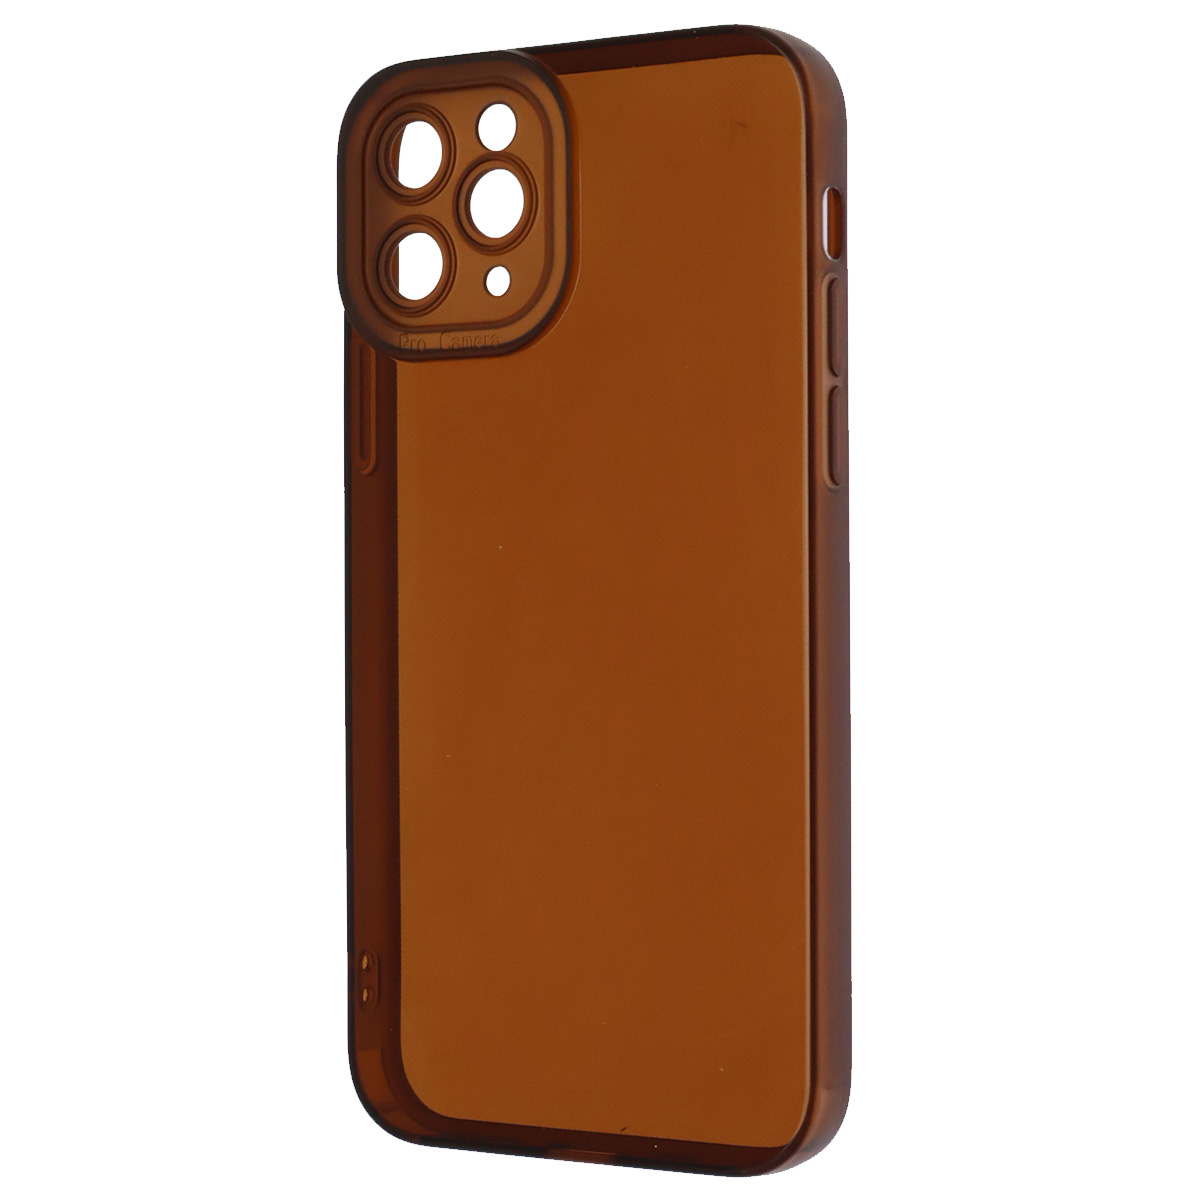 Чехол накладка CATEYES для APPLE iPhone 11 Pro, защита камеры, силикон, цвет прозрачно коричневый